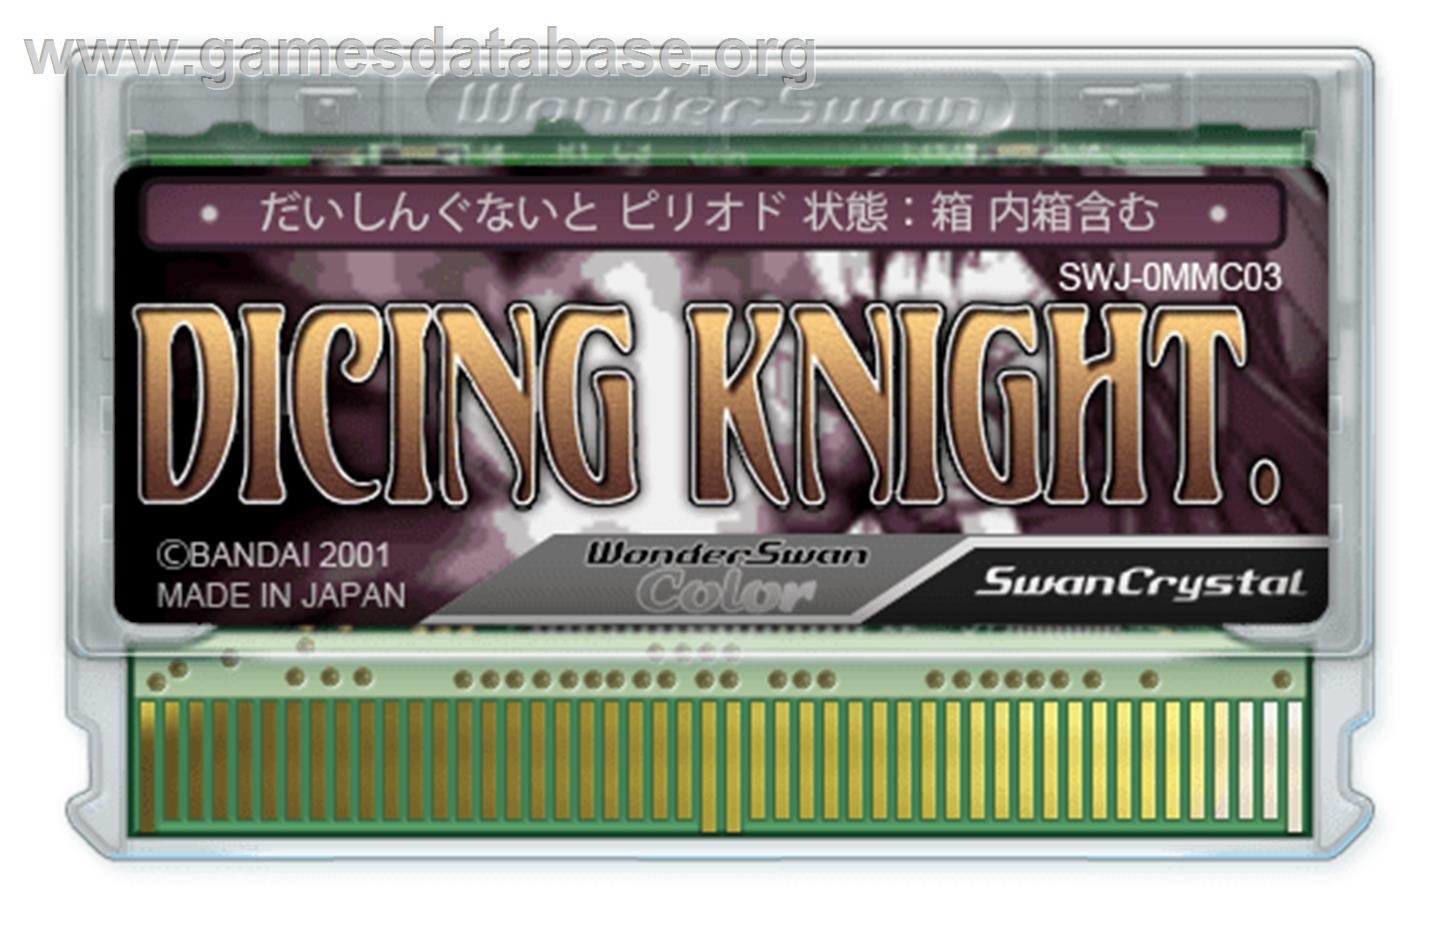 Dicing Knight Period - Bandai WonderSwan Color - Artwork - Cartridge